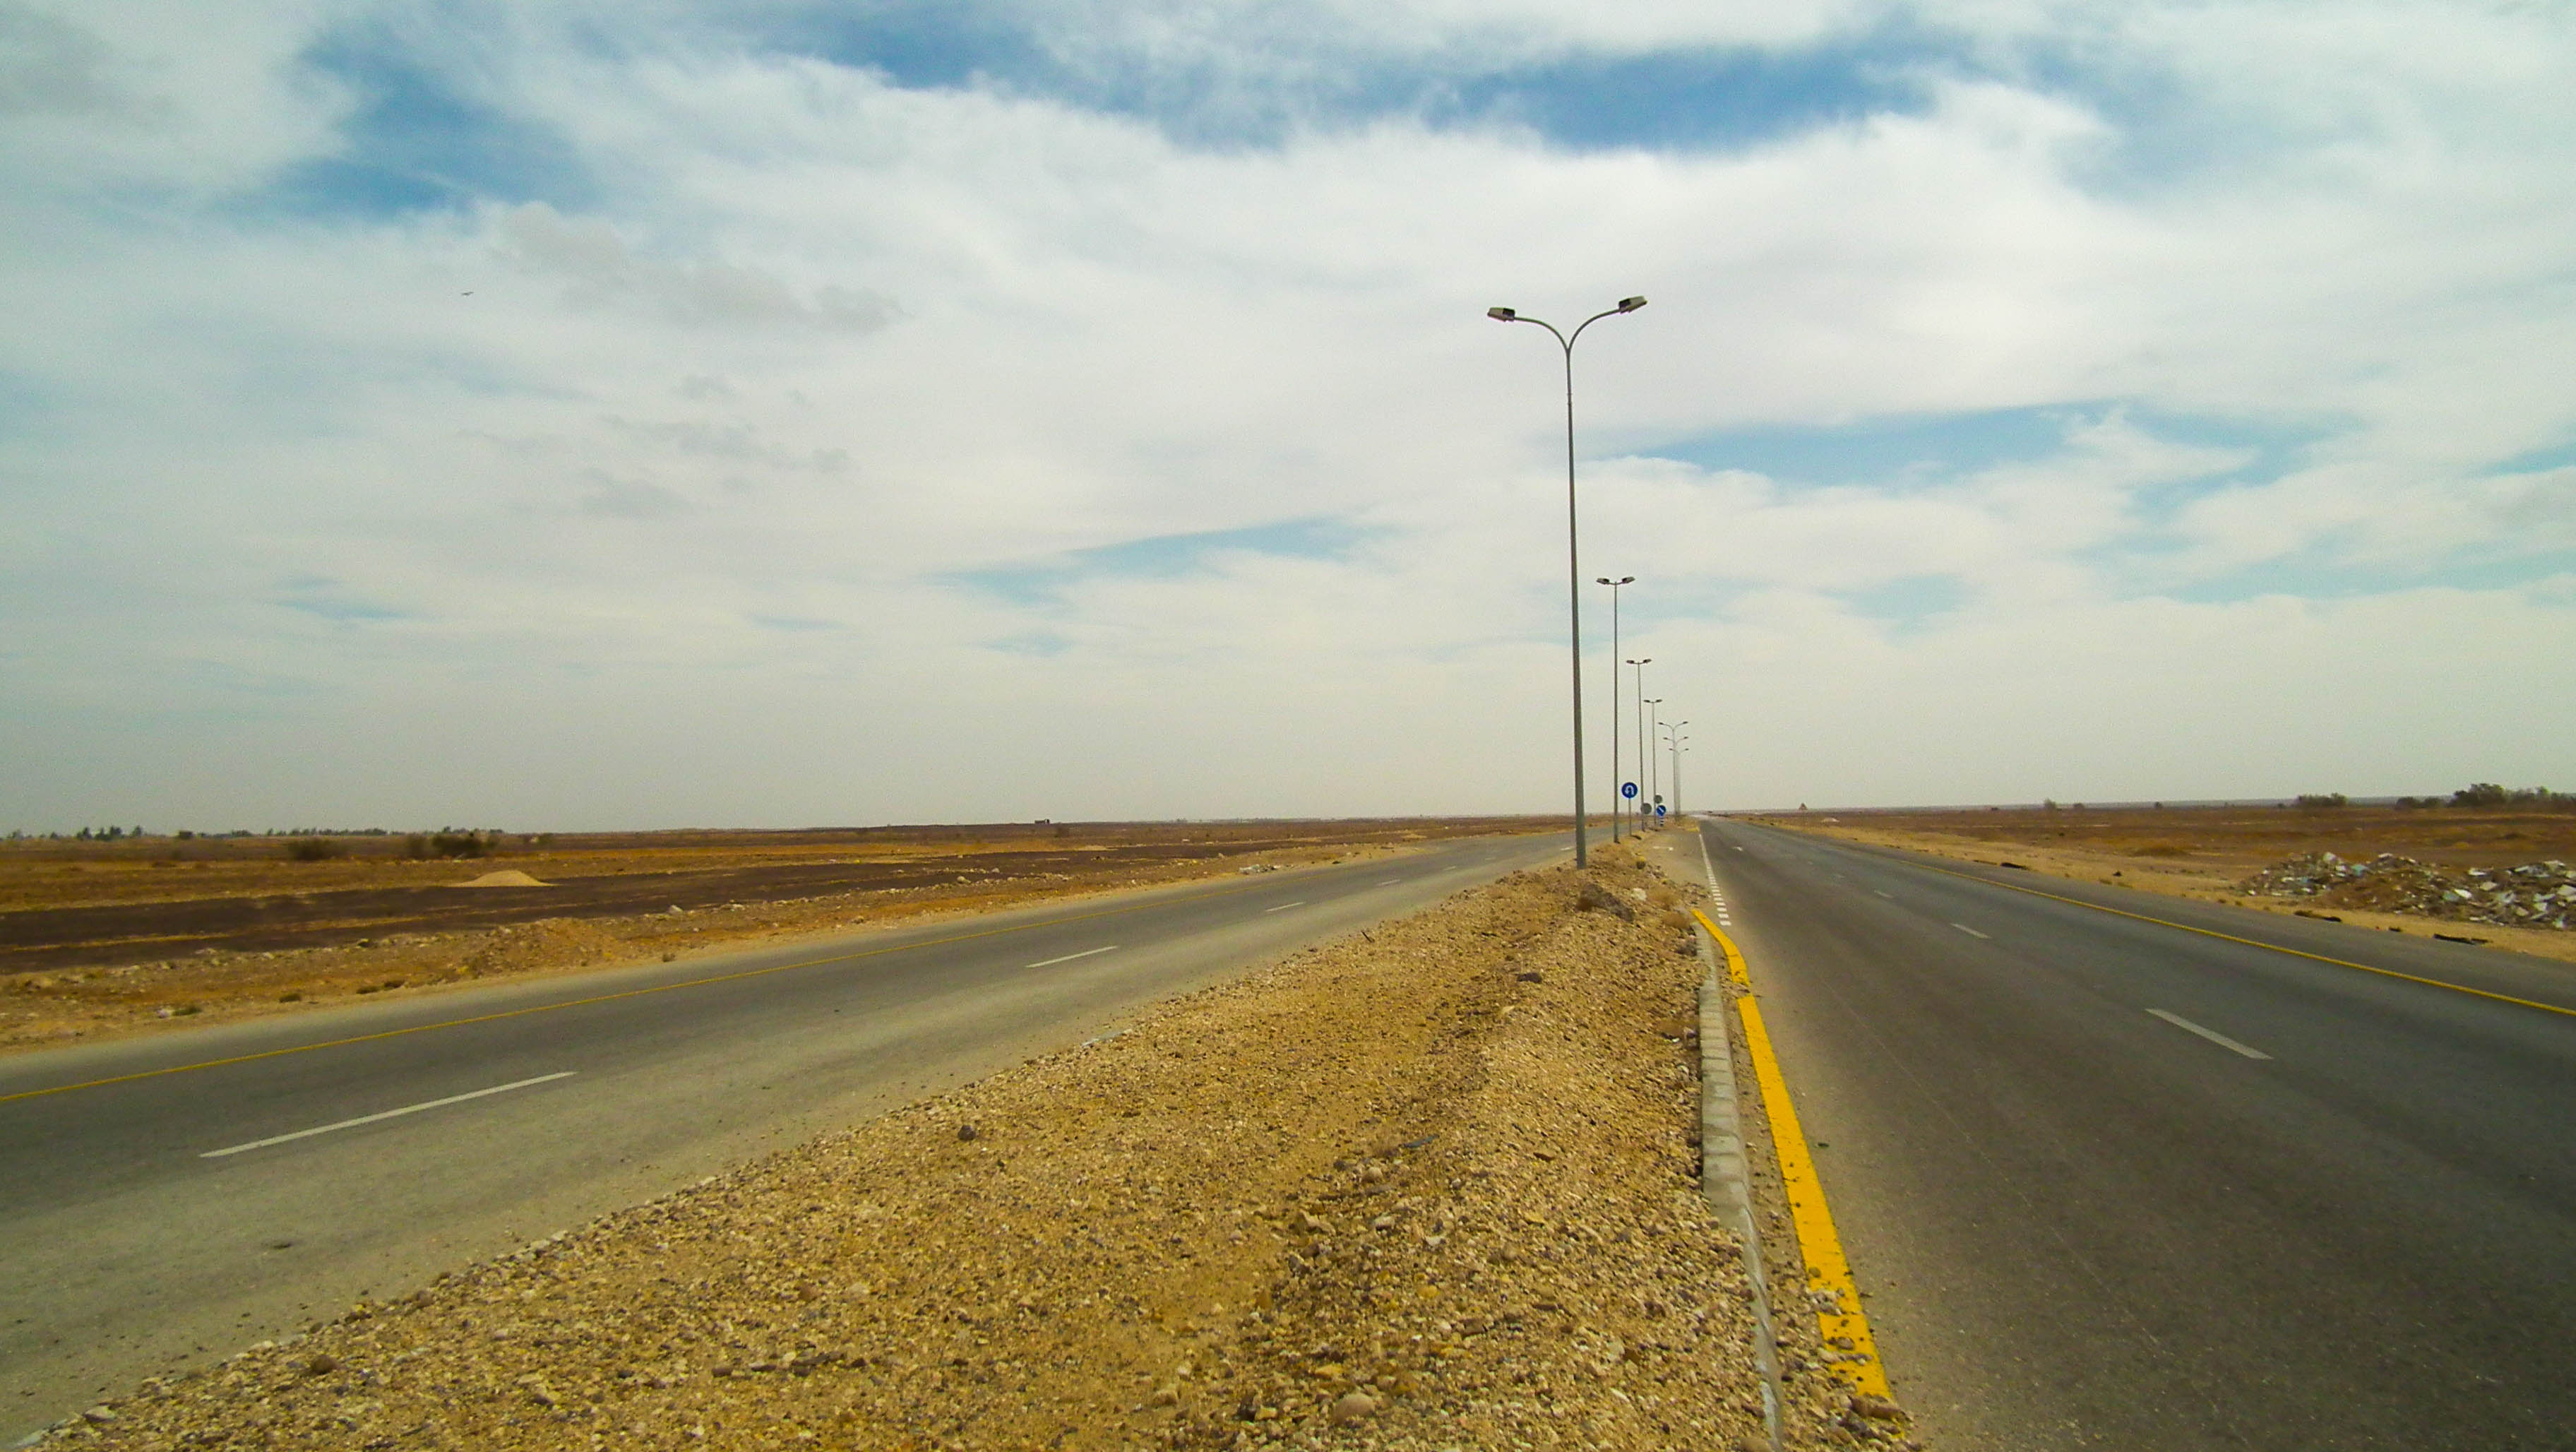 Jordania, Badia, pustynia, Al-Badiyah